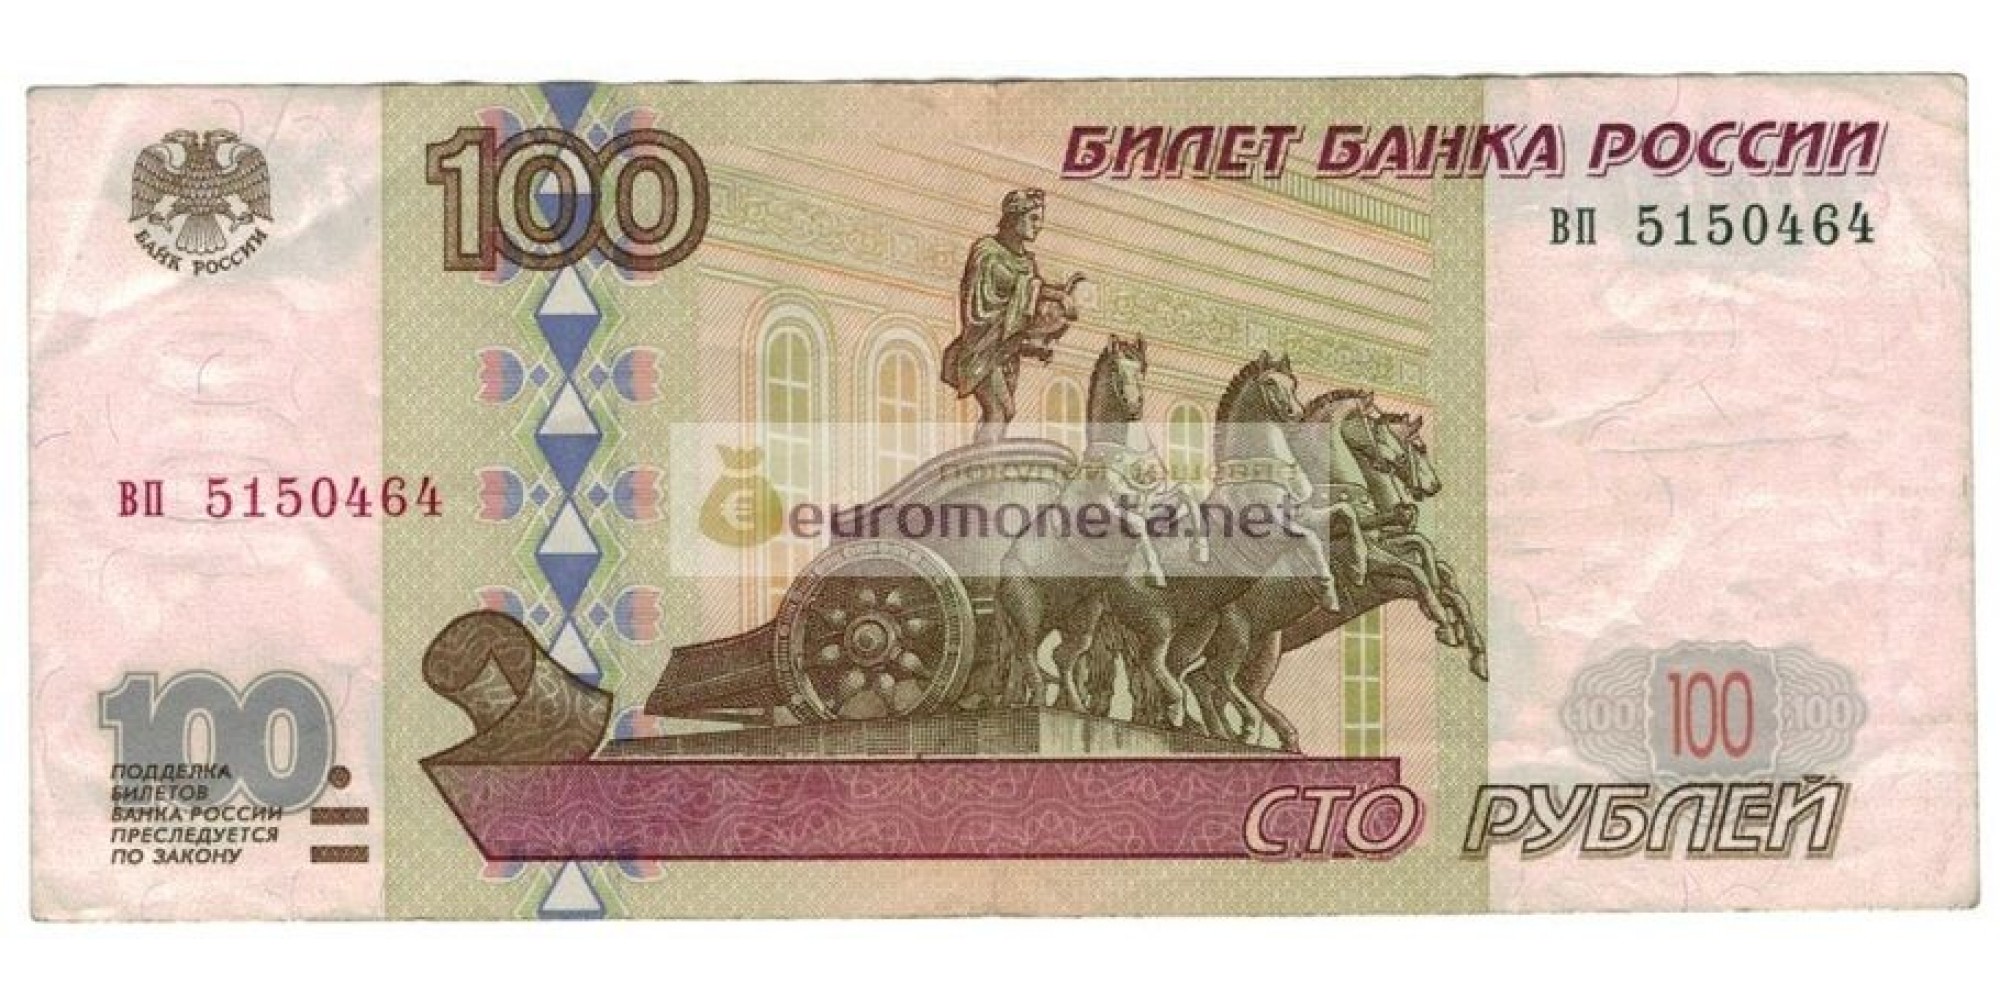 Россия 100 рублей 1997 год без модификации серия вп 5150464